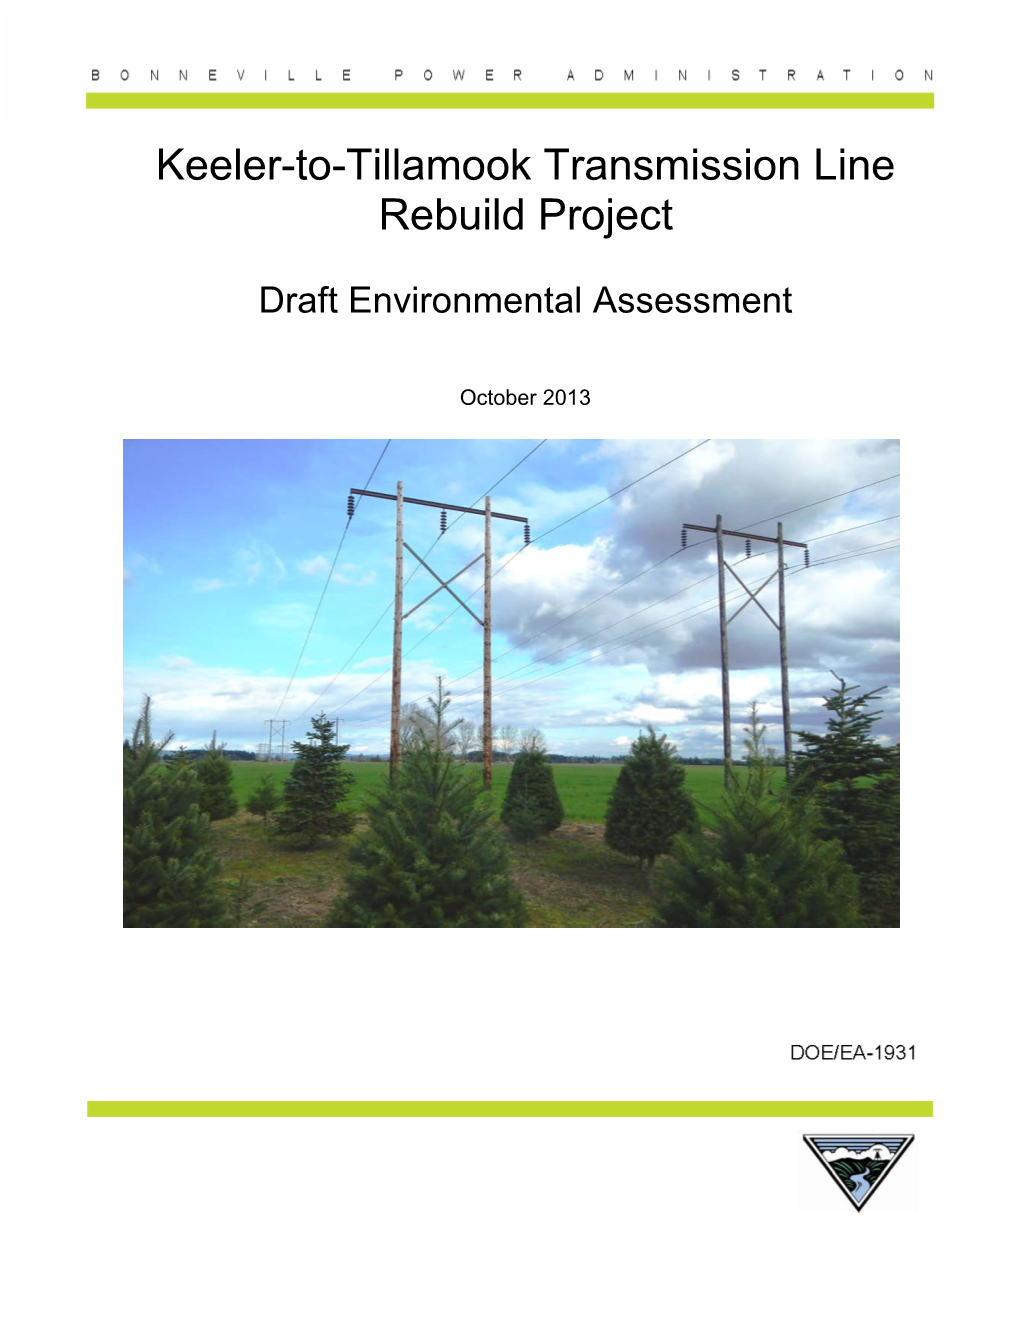 Keeler-To-Tillamook Transmission Line Rebuild Project